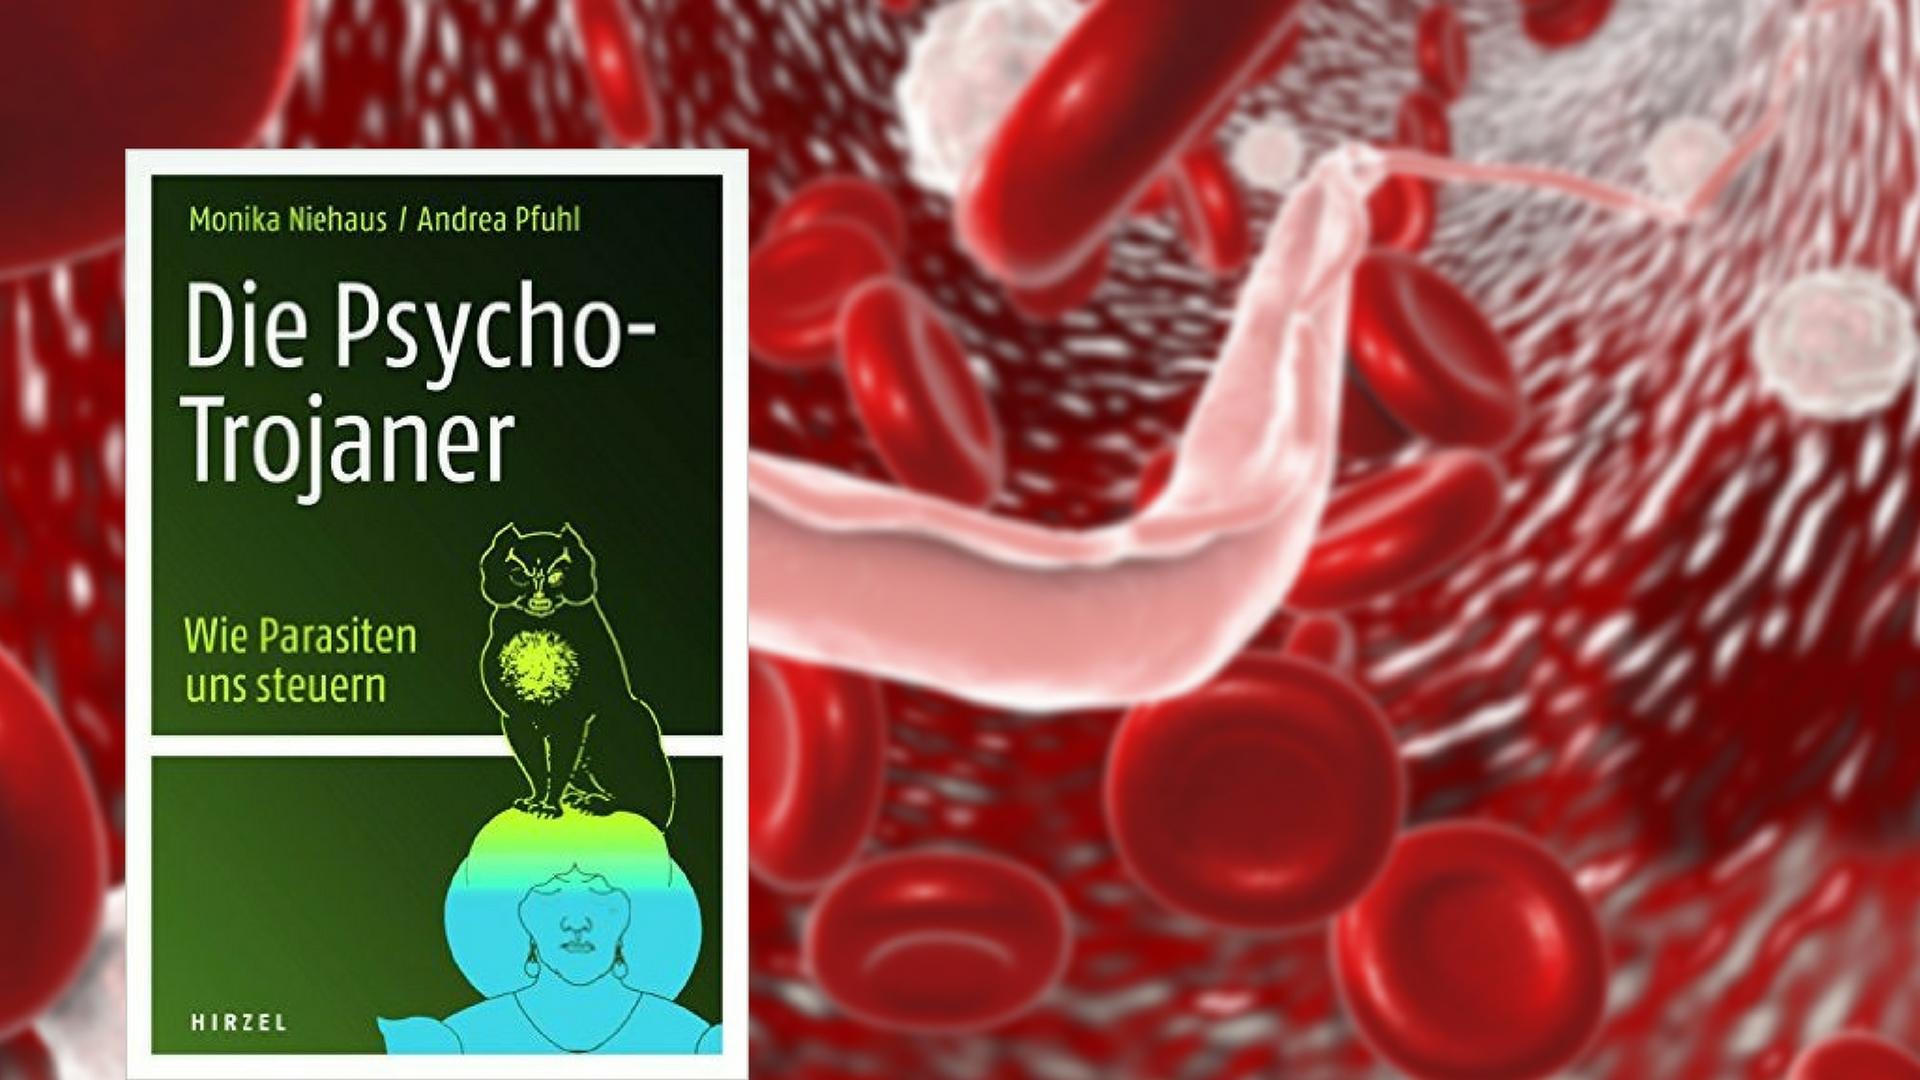 Das Buchcover zu Monika Niehaus/ Andrea Pfuhl: "Die Psycho-Trojaner", im Hintergrund eine Illustration des Erregers der Schlafkrankheit